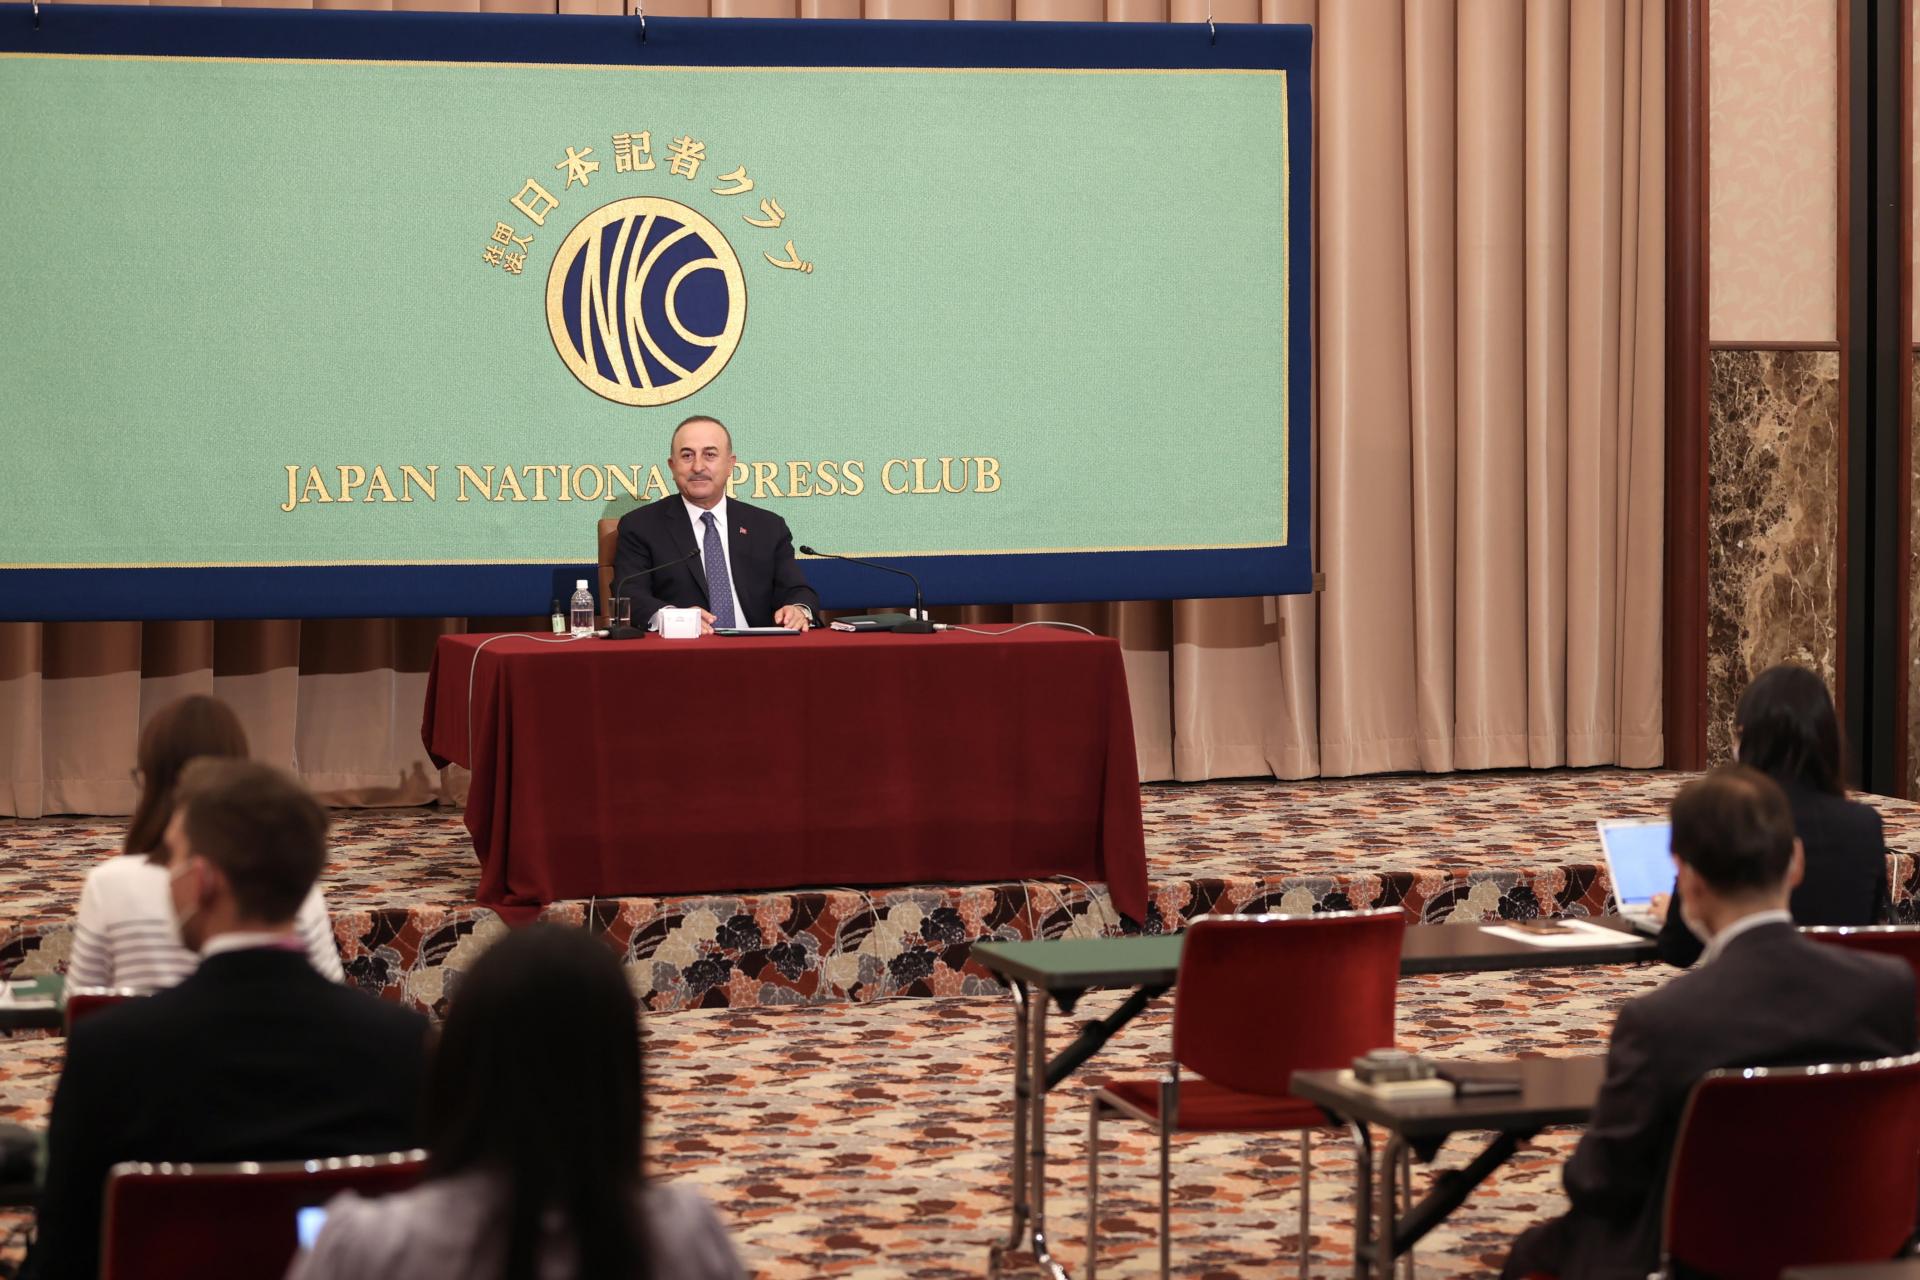 جاپان اگر ترک ڈرانز خریدنا چاہتا ہے تو ہم  تیار ہیں: وزیر خارجہ  میولود چاوش اولو